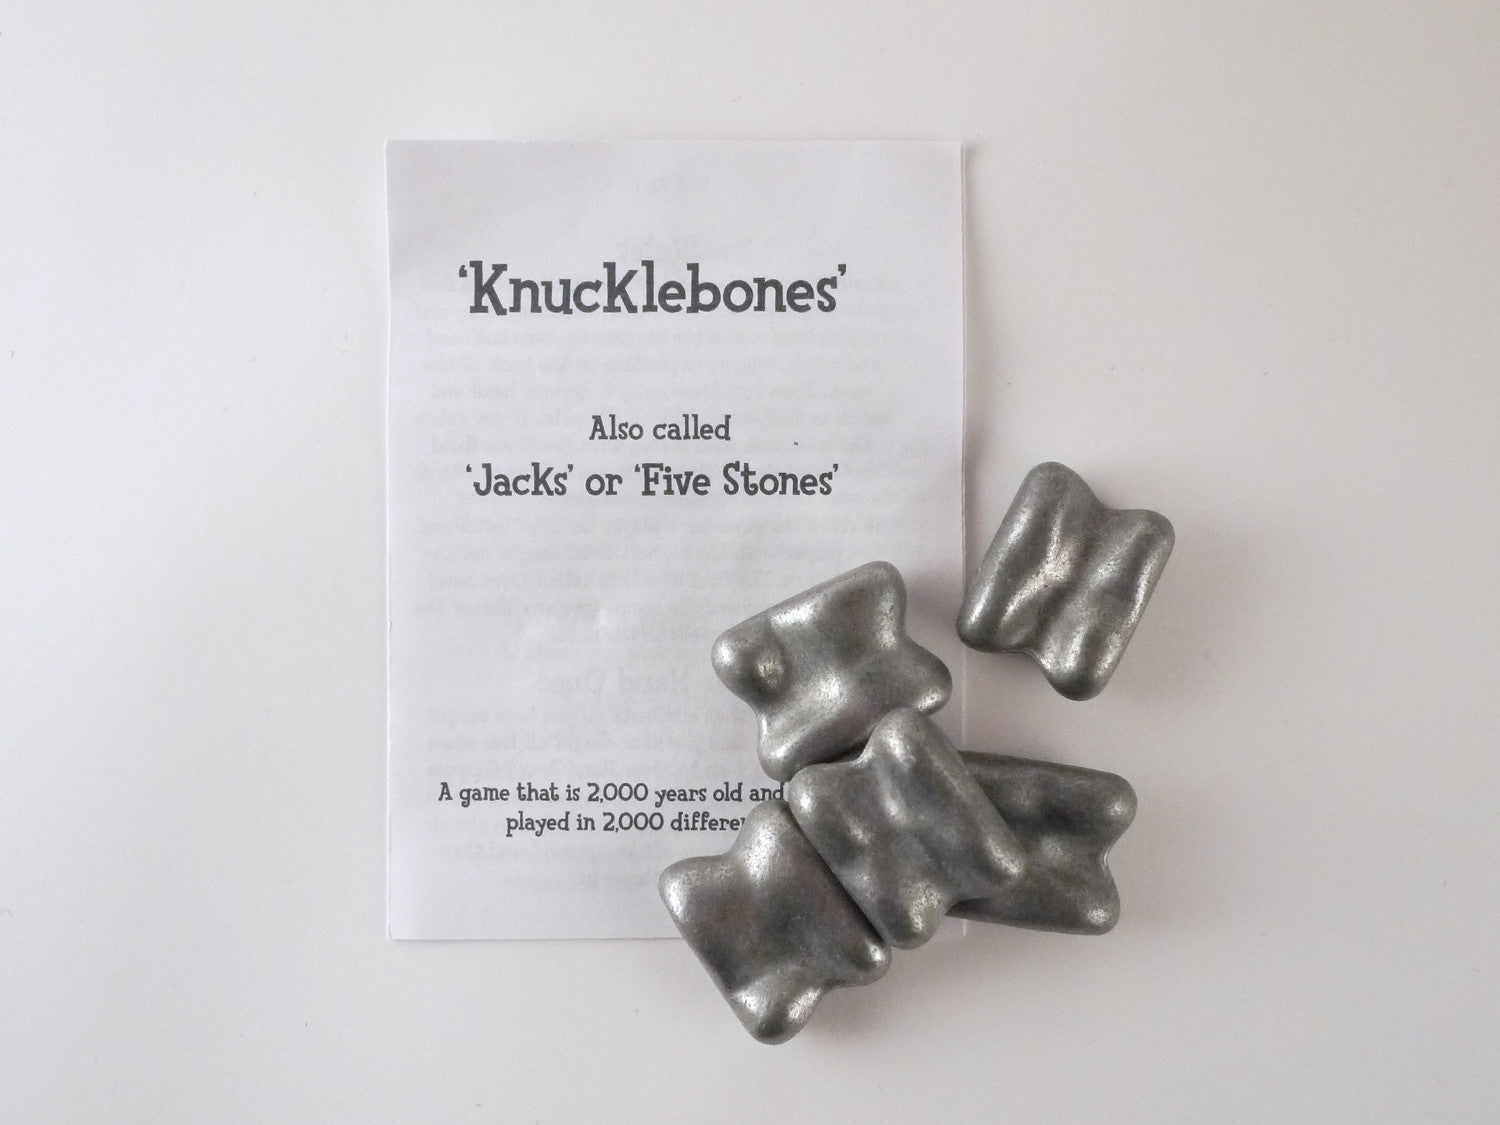 kidz-stuff-online - Knucklebones